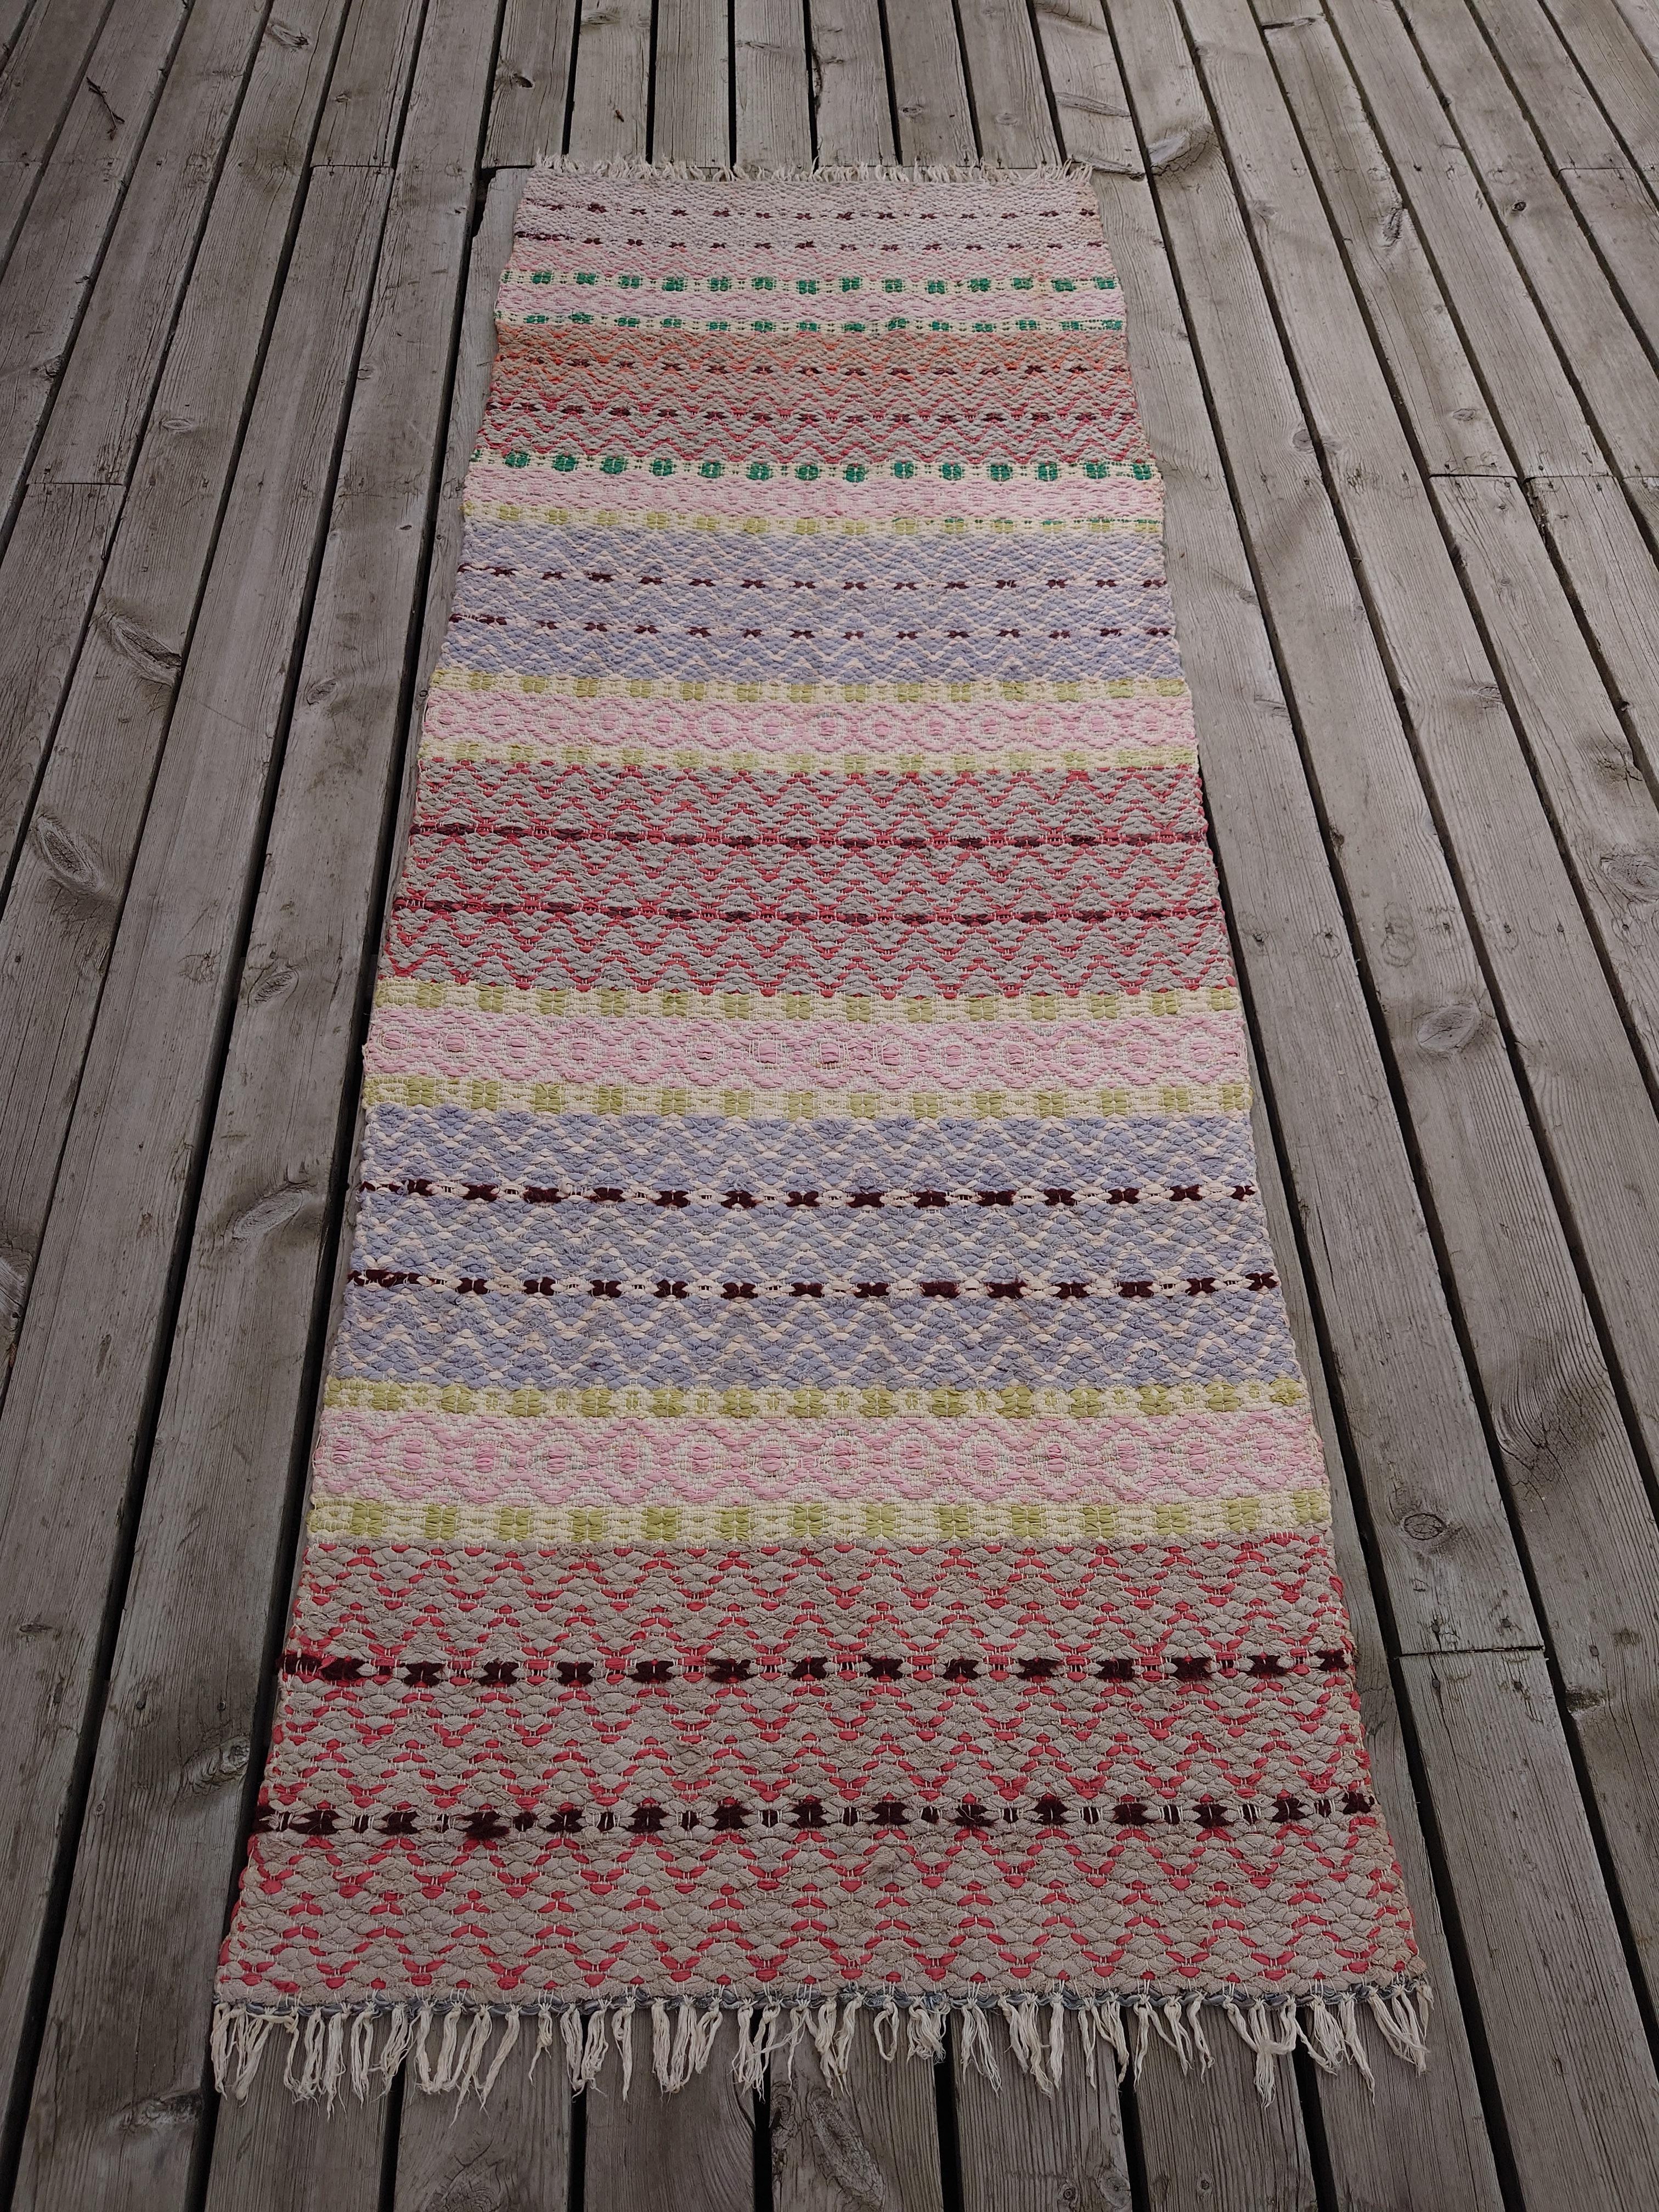 Ein fantastischer schwedischer Fleckerlteppich in schönen Farben und Mustern.
Handwowen in Boden Nordschweden .

Vintage & antike schwedische Rag Teppiche  aus Schweden gibt es in einer Vielzahl von Farbschemata und Mustern. Es handelt sich um